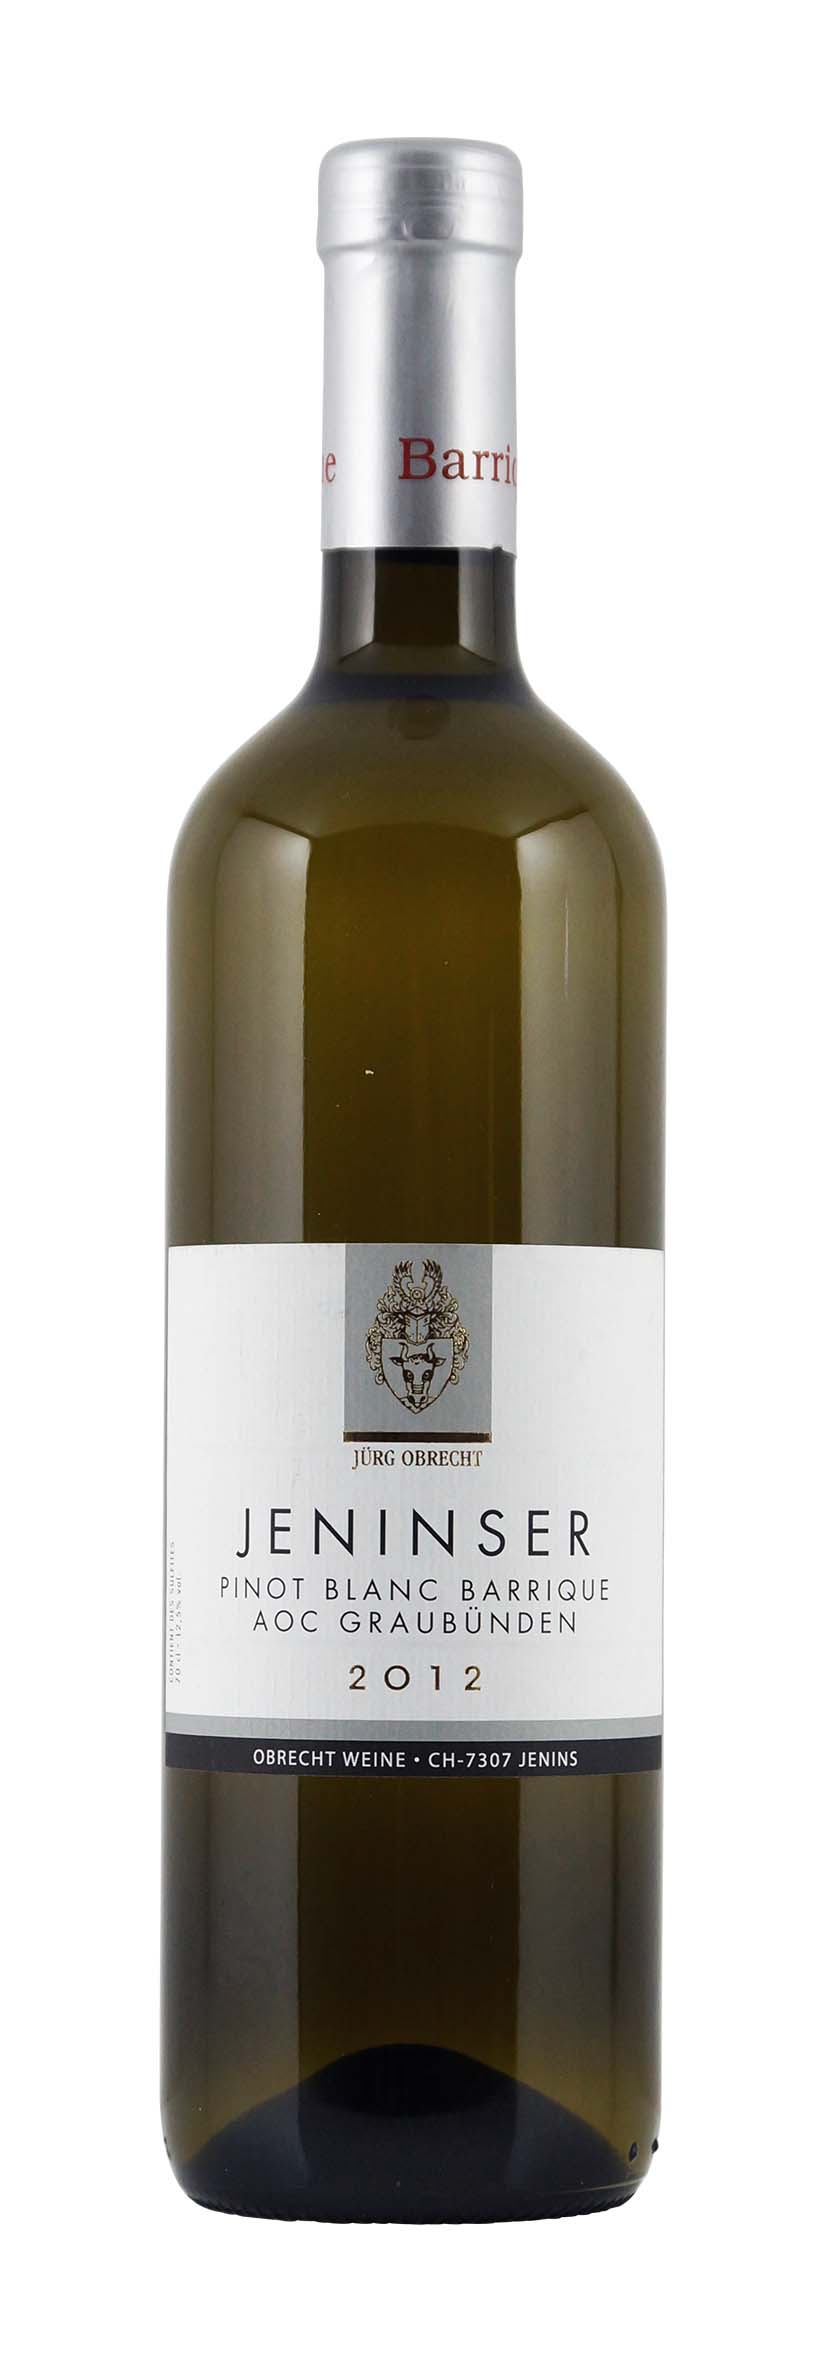 Graubünden AOC Jeninser Pinot Blanc Barrique 2012